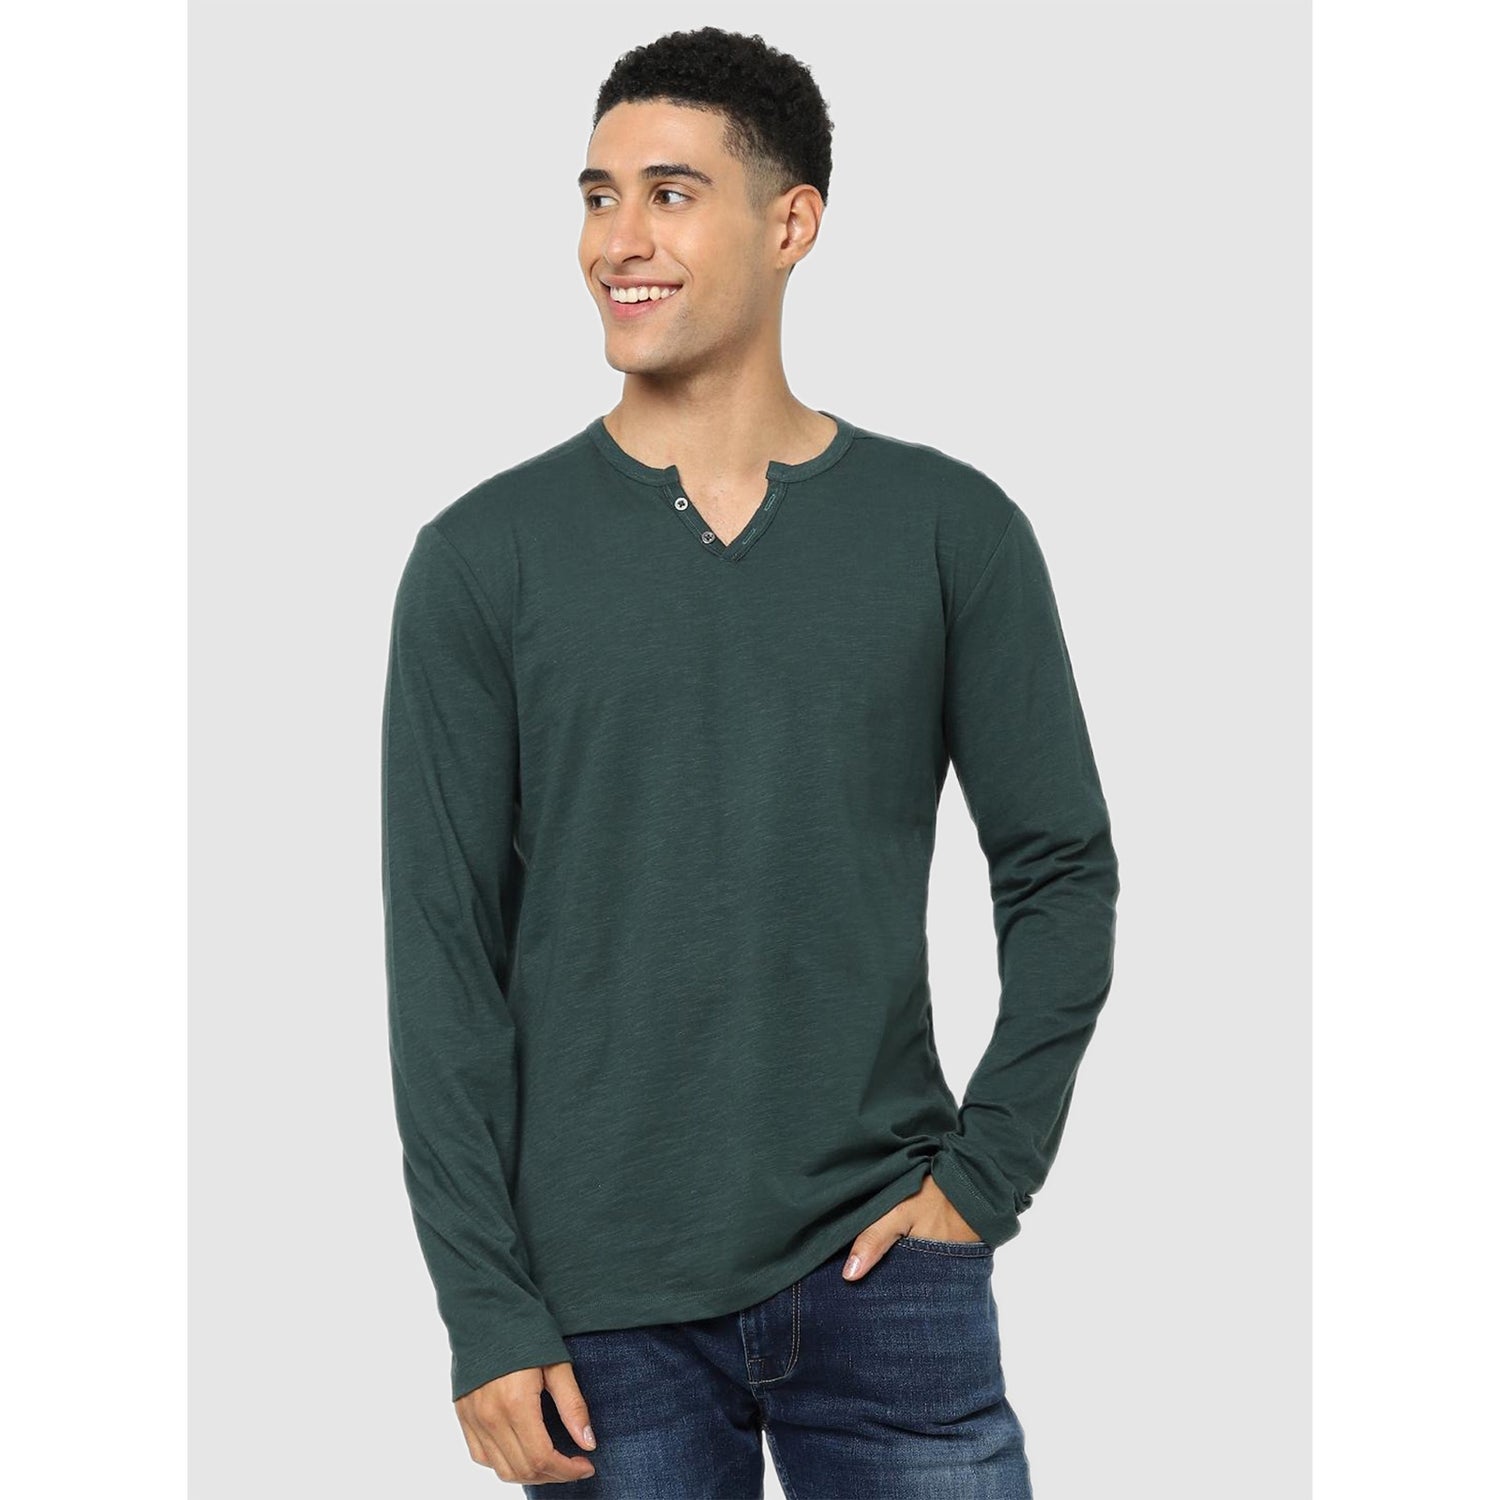 Green Regular Fit Henley Neck T-shirt (CEABELONGIN)